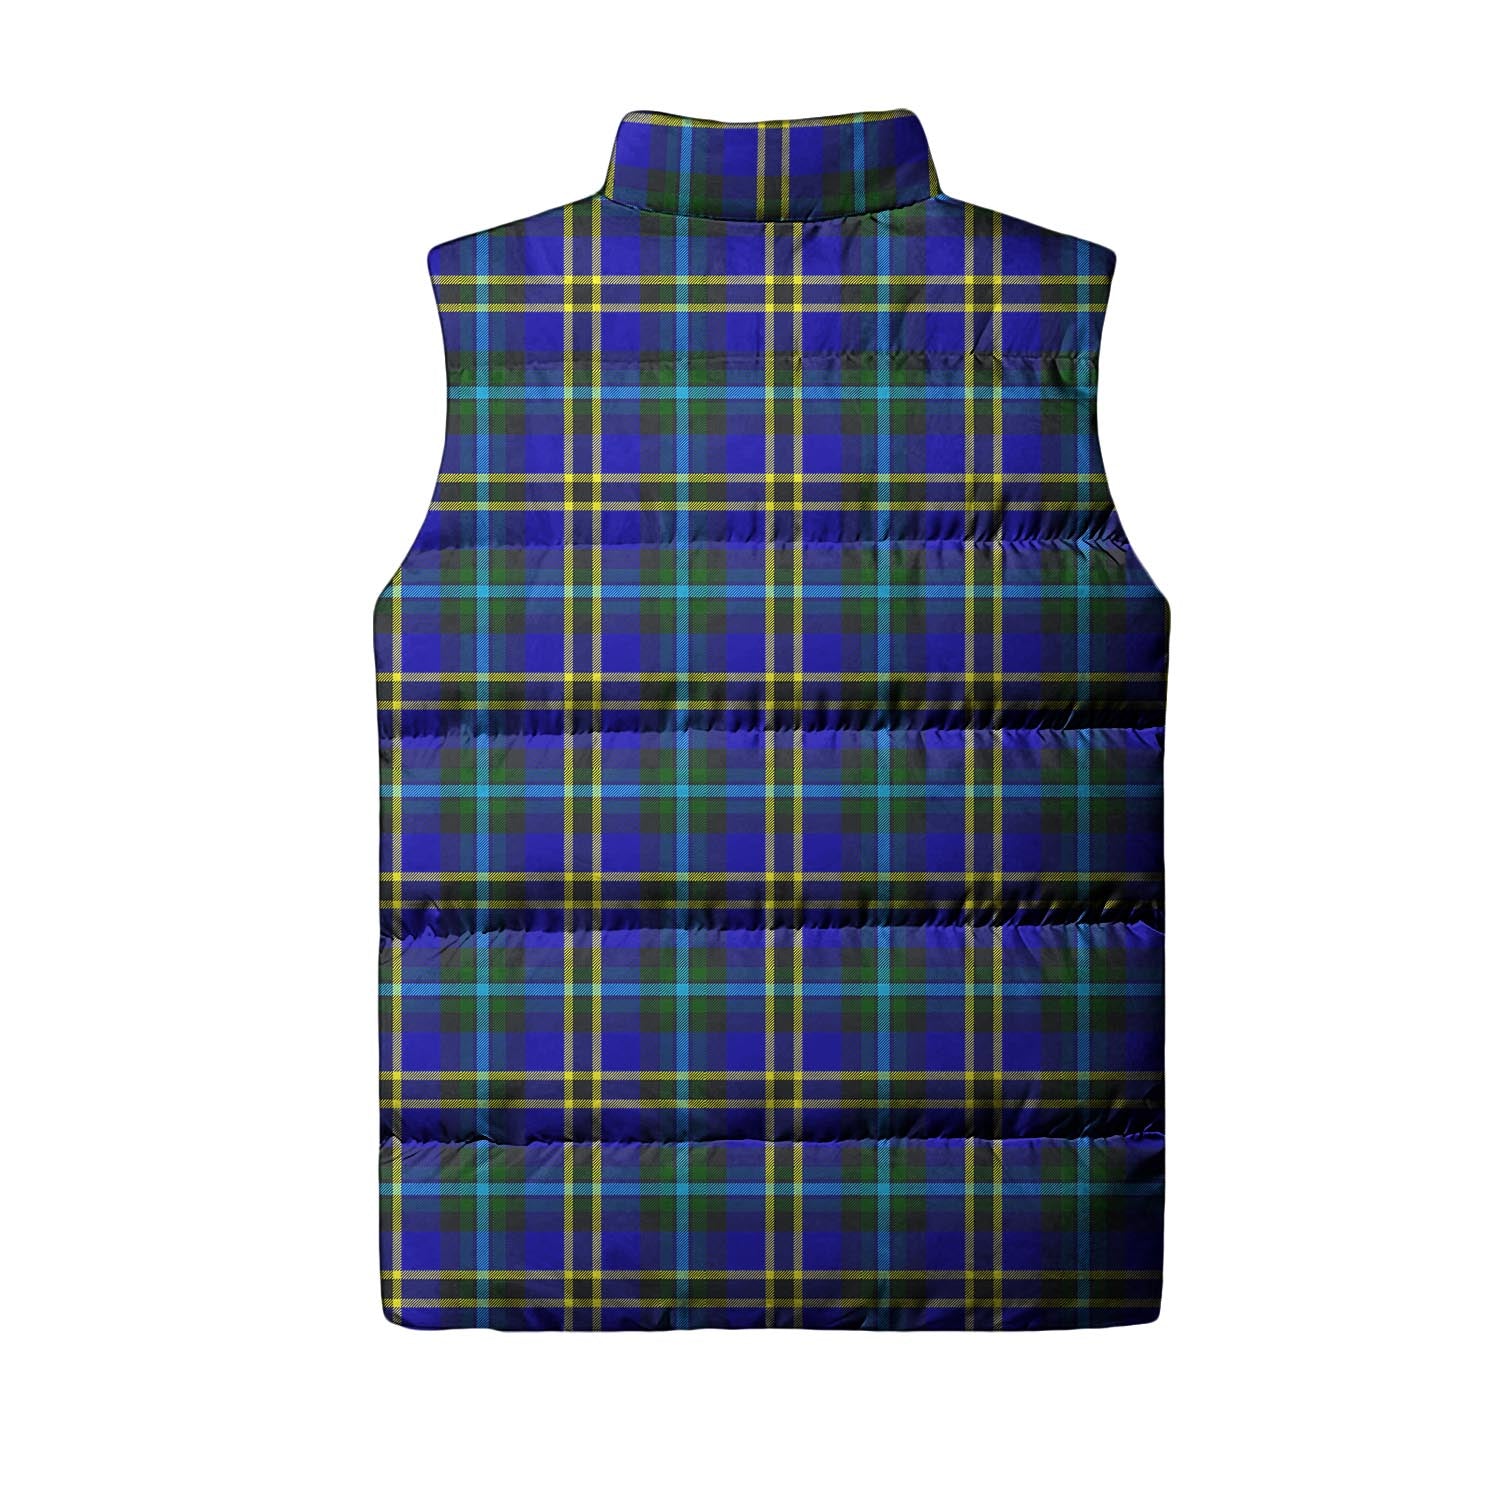 Weir Modern Tartan Sleeveless Puffer Jacket with Family Crest - Tartanvibesclothing